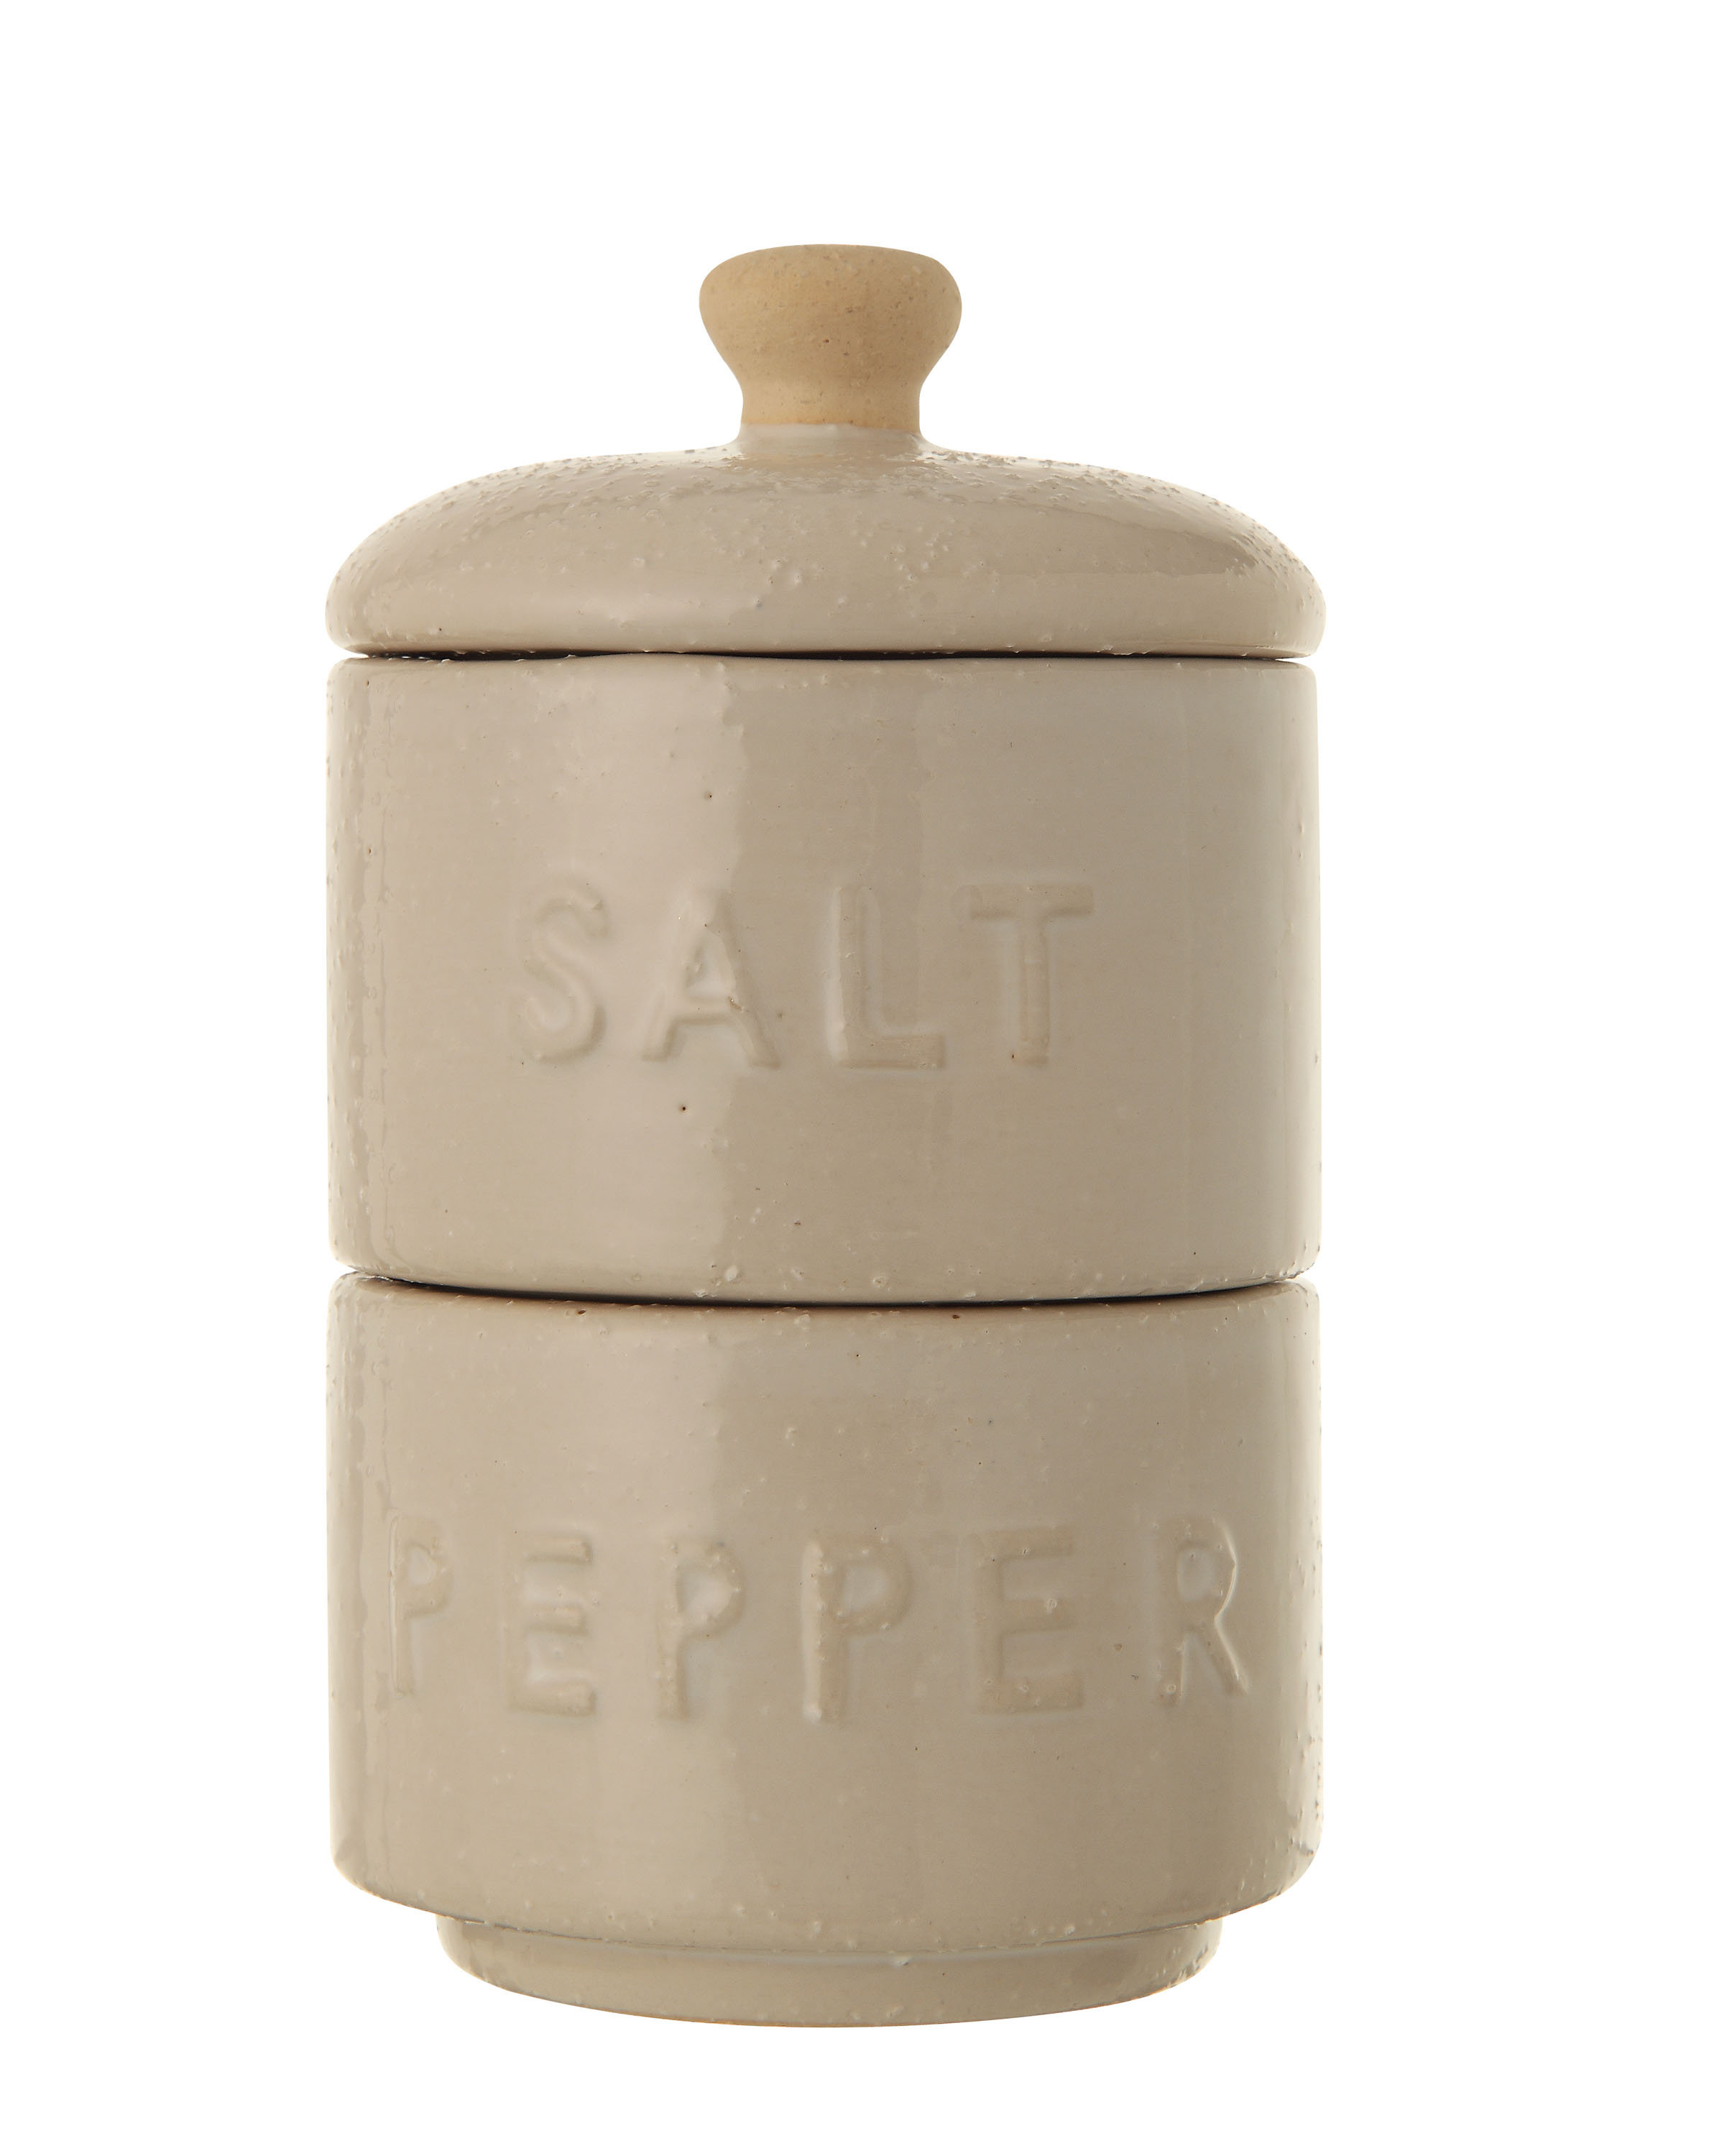 https://assets.wfcdn.com/im/22549746/compr-r85/2559/255943598/salt-and-pepper-shaker-set.jpg